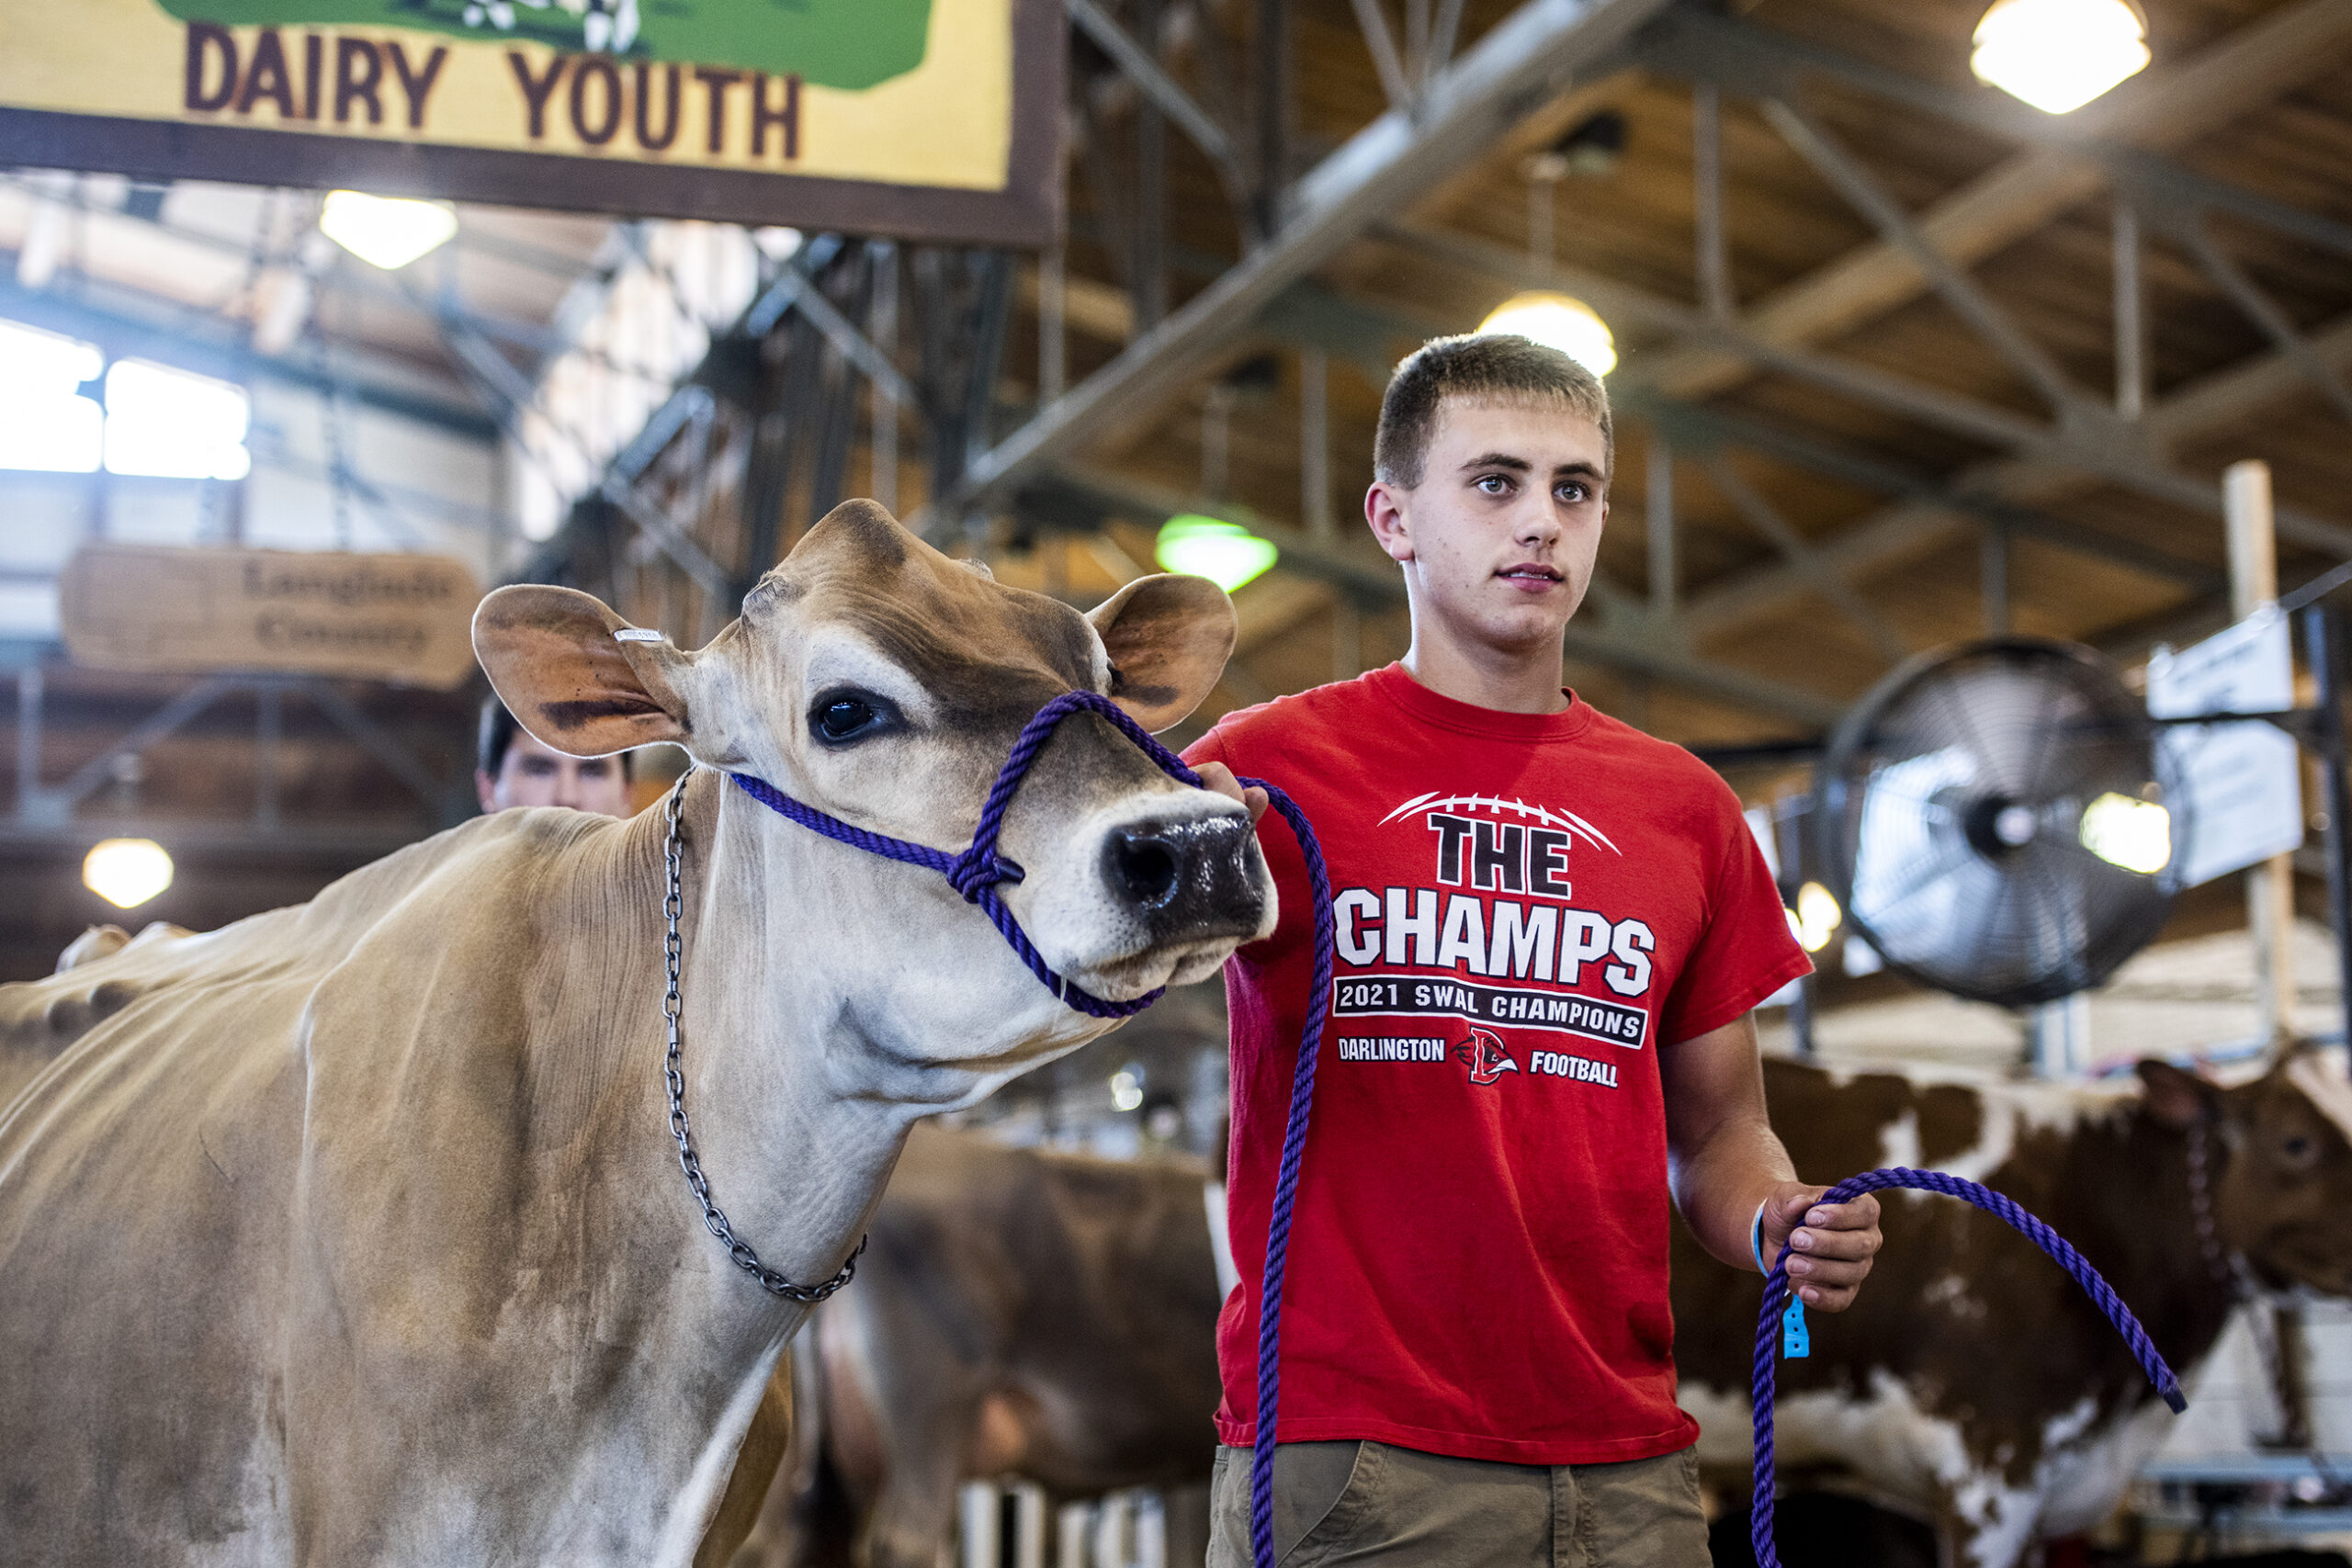 A boy in a red shirt walks a light brown cow inside a barn.